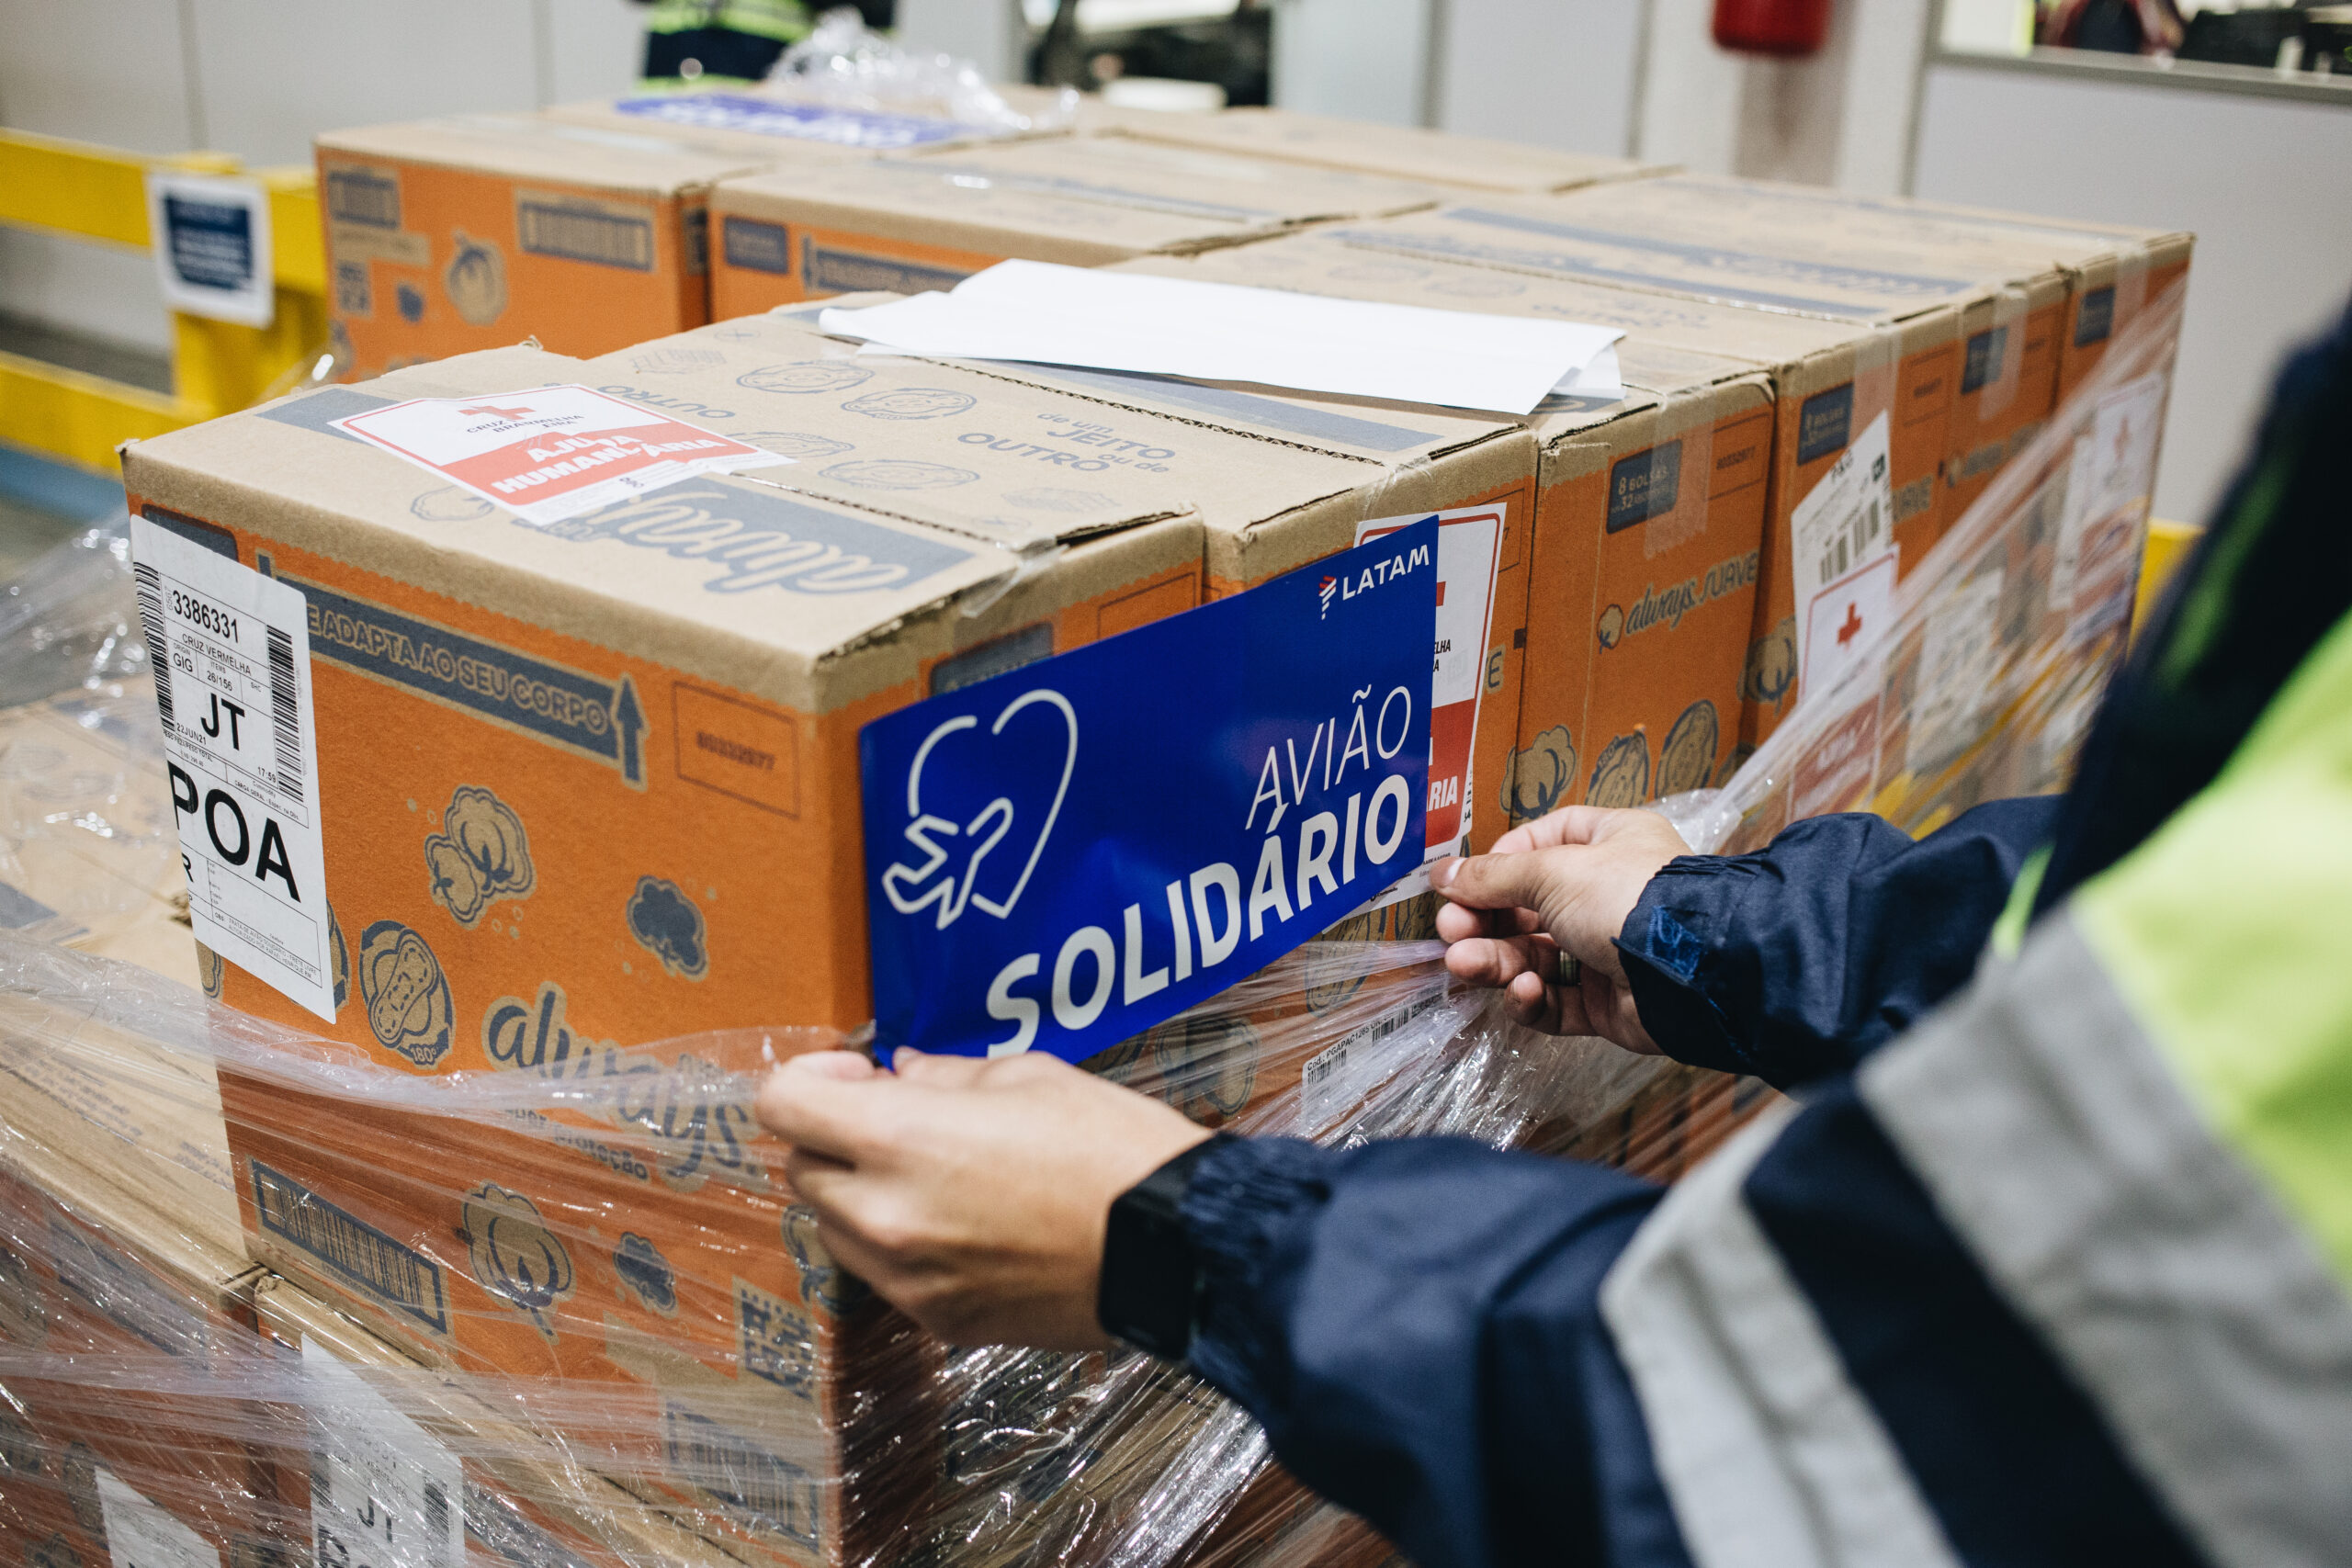 Avião Solidário também transportou este ano mais de um milhão de absorventes para aproximadamente 40 mil pessoas em 5 estados